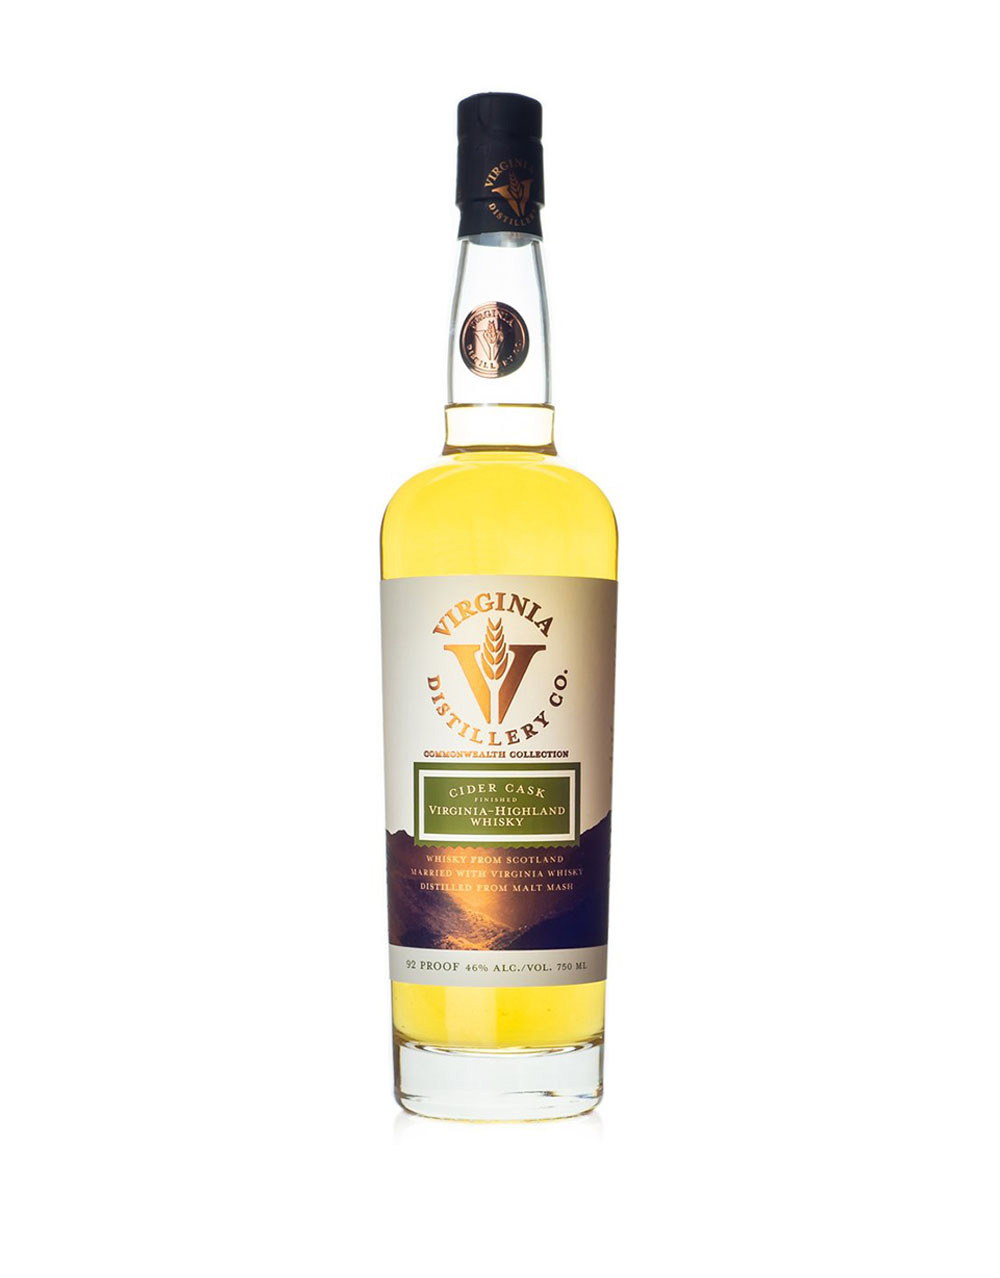 Virginia Highland Cider